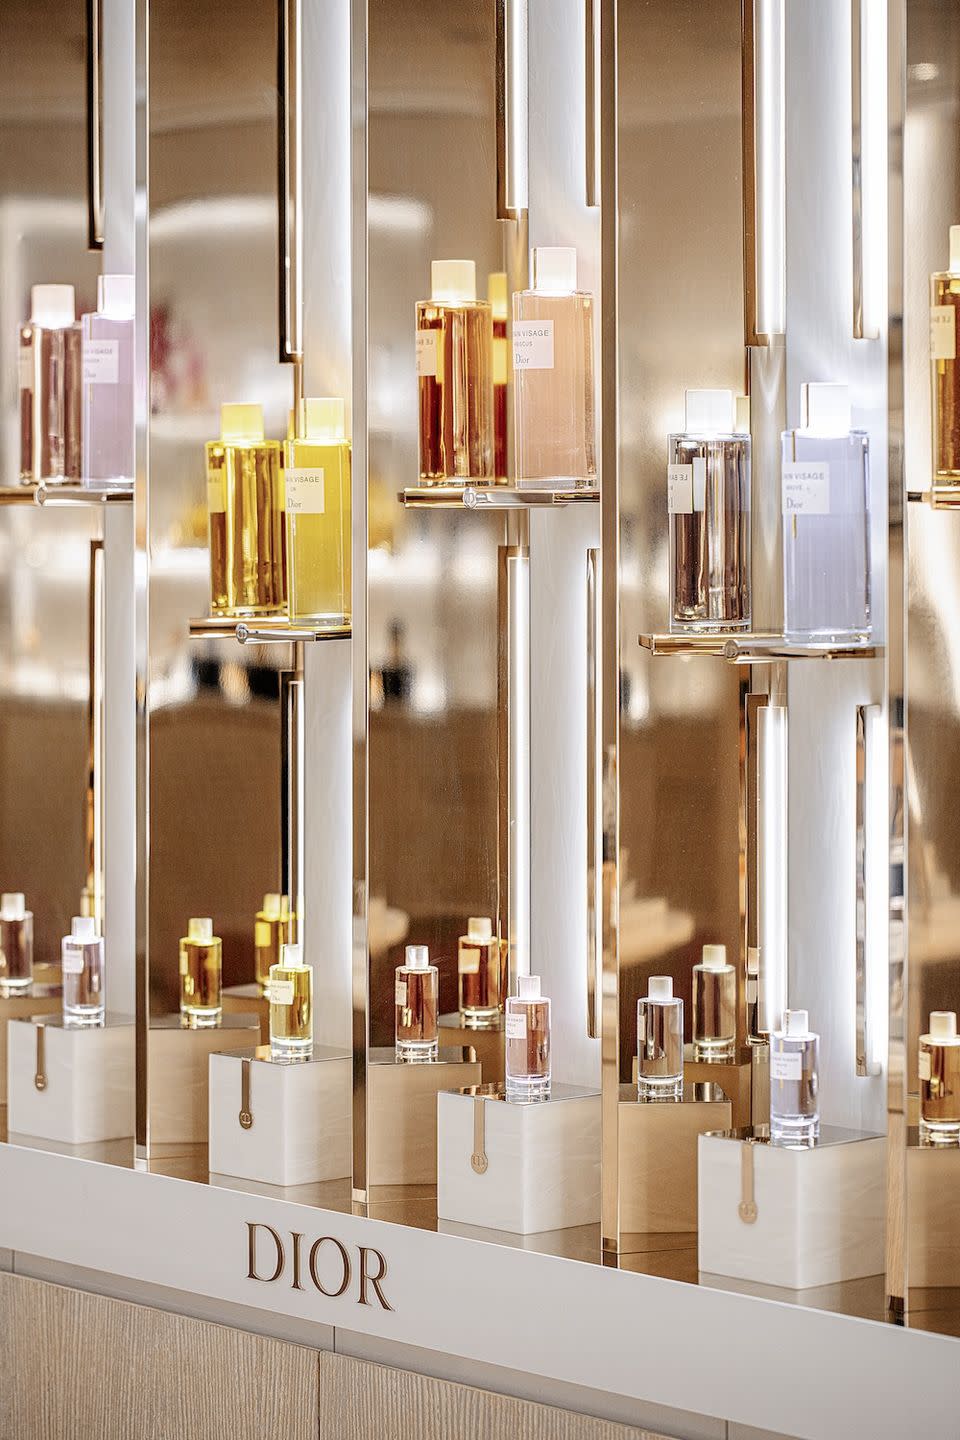 Photo credit: Matthieu Salvaing for Parfums Christian Dior